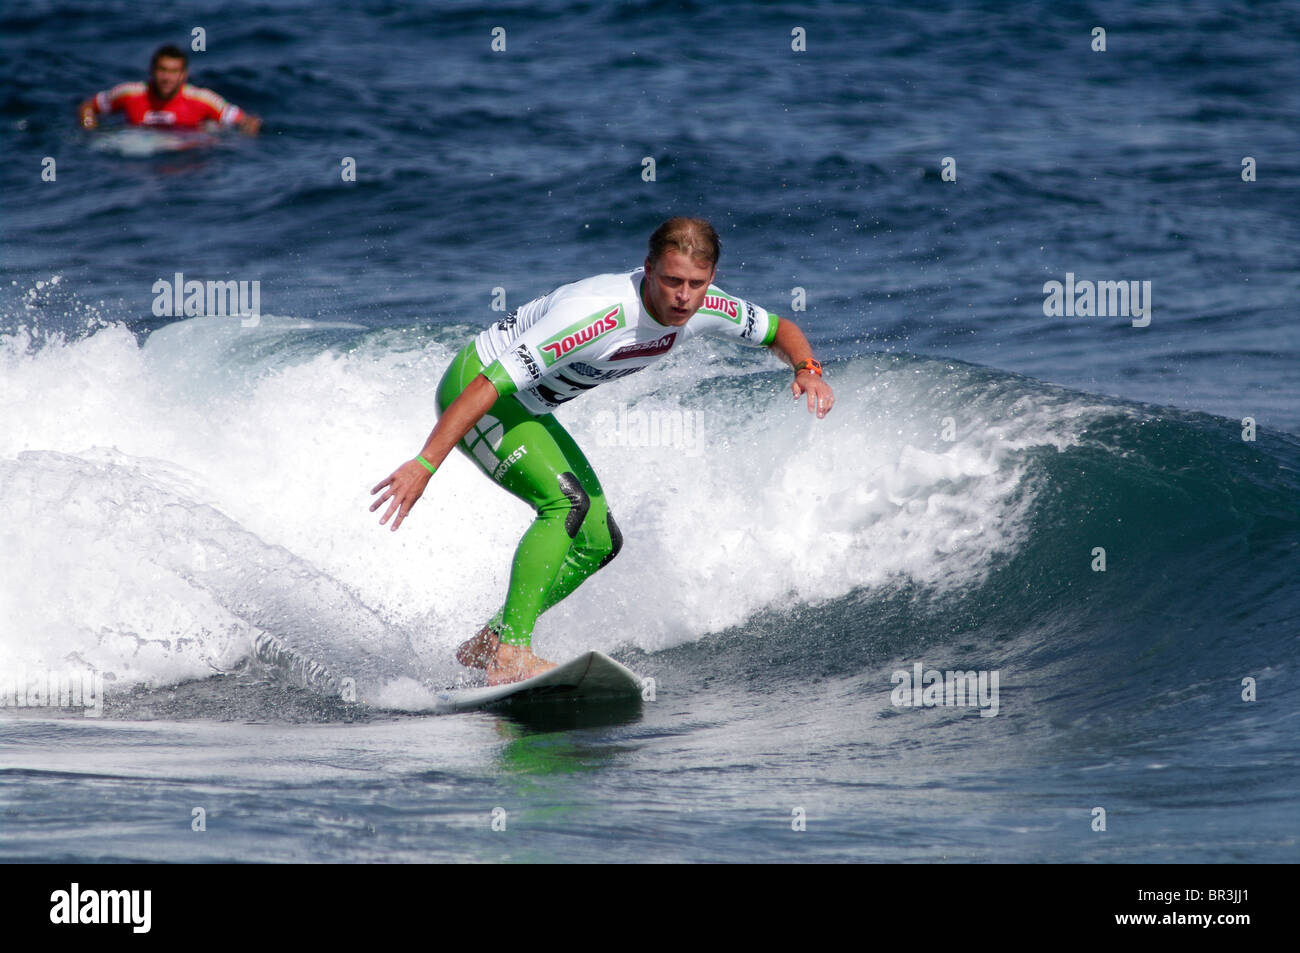 Isole Azzorre pro riders surf utilizzando le onde delle Azzorre Foto Stock